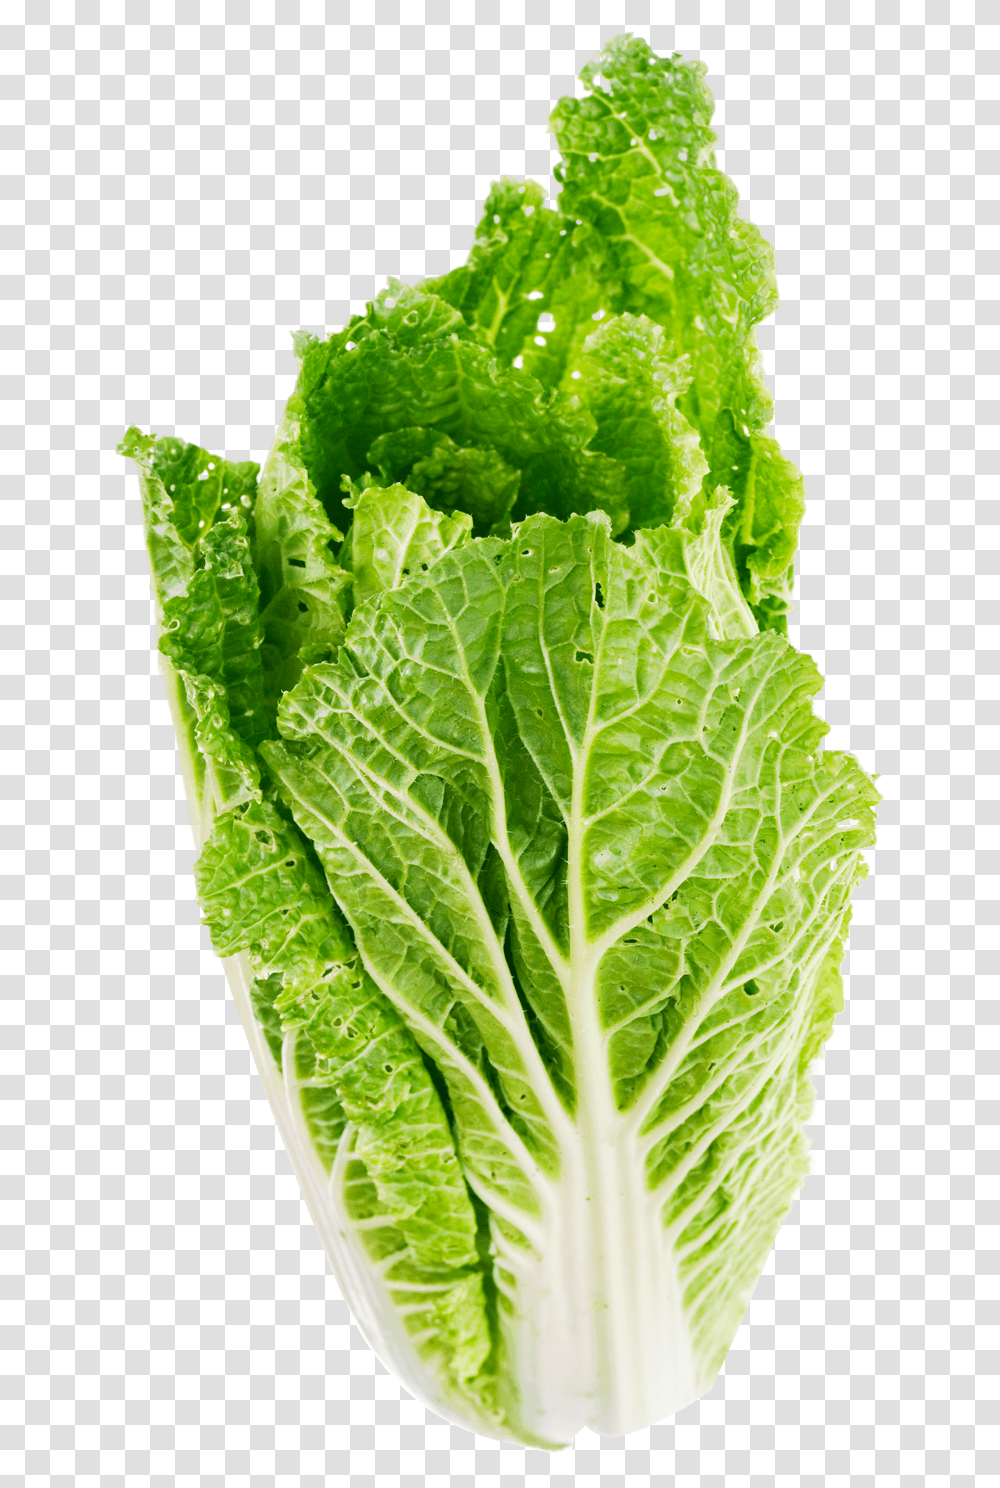 Download Lettuce Leaf Image For Free Lettuce, Plant, Vegetable, Food, Pineapple Transparent Png